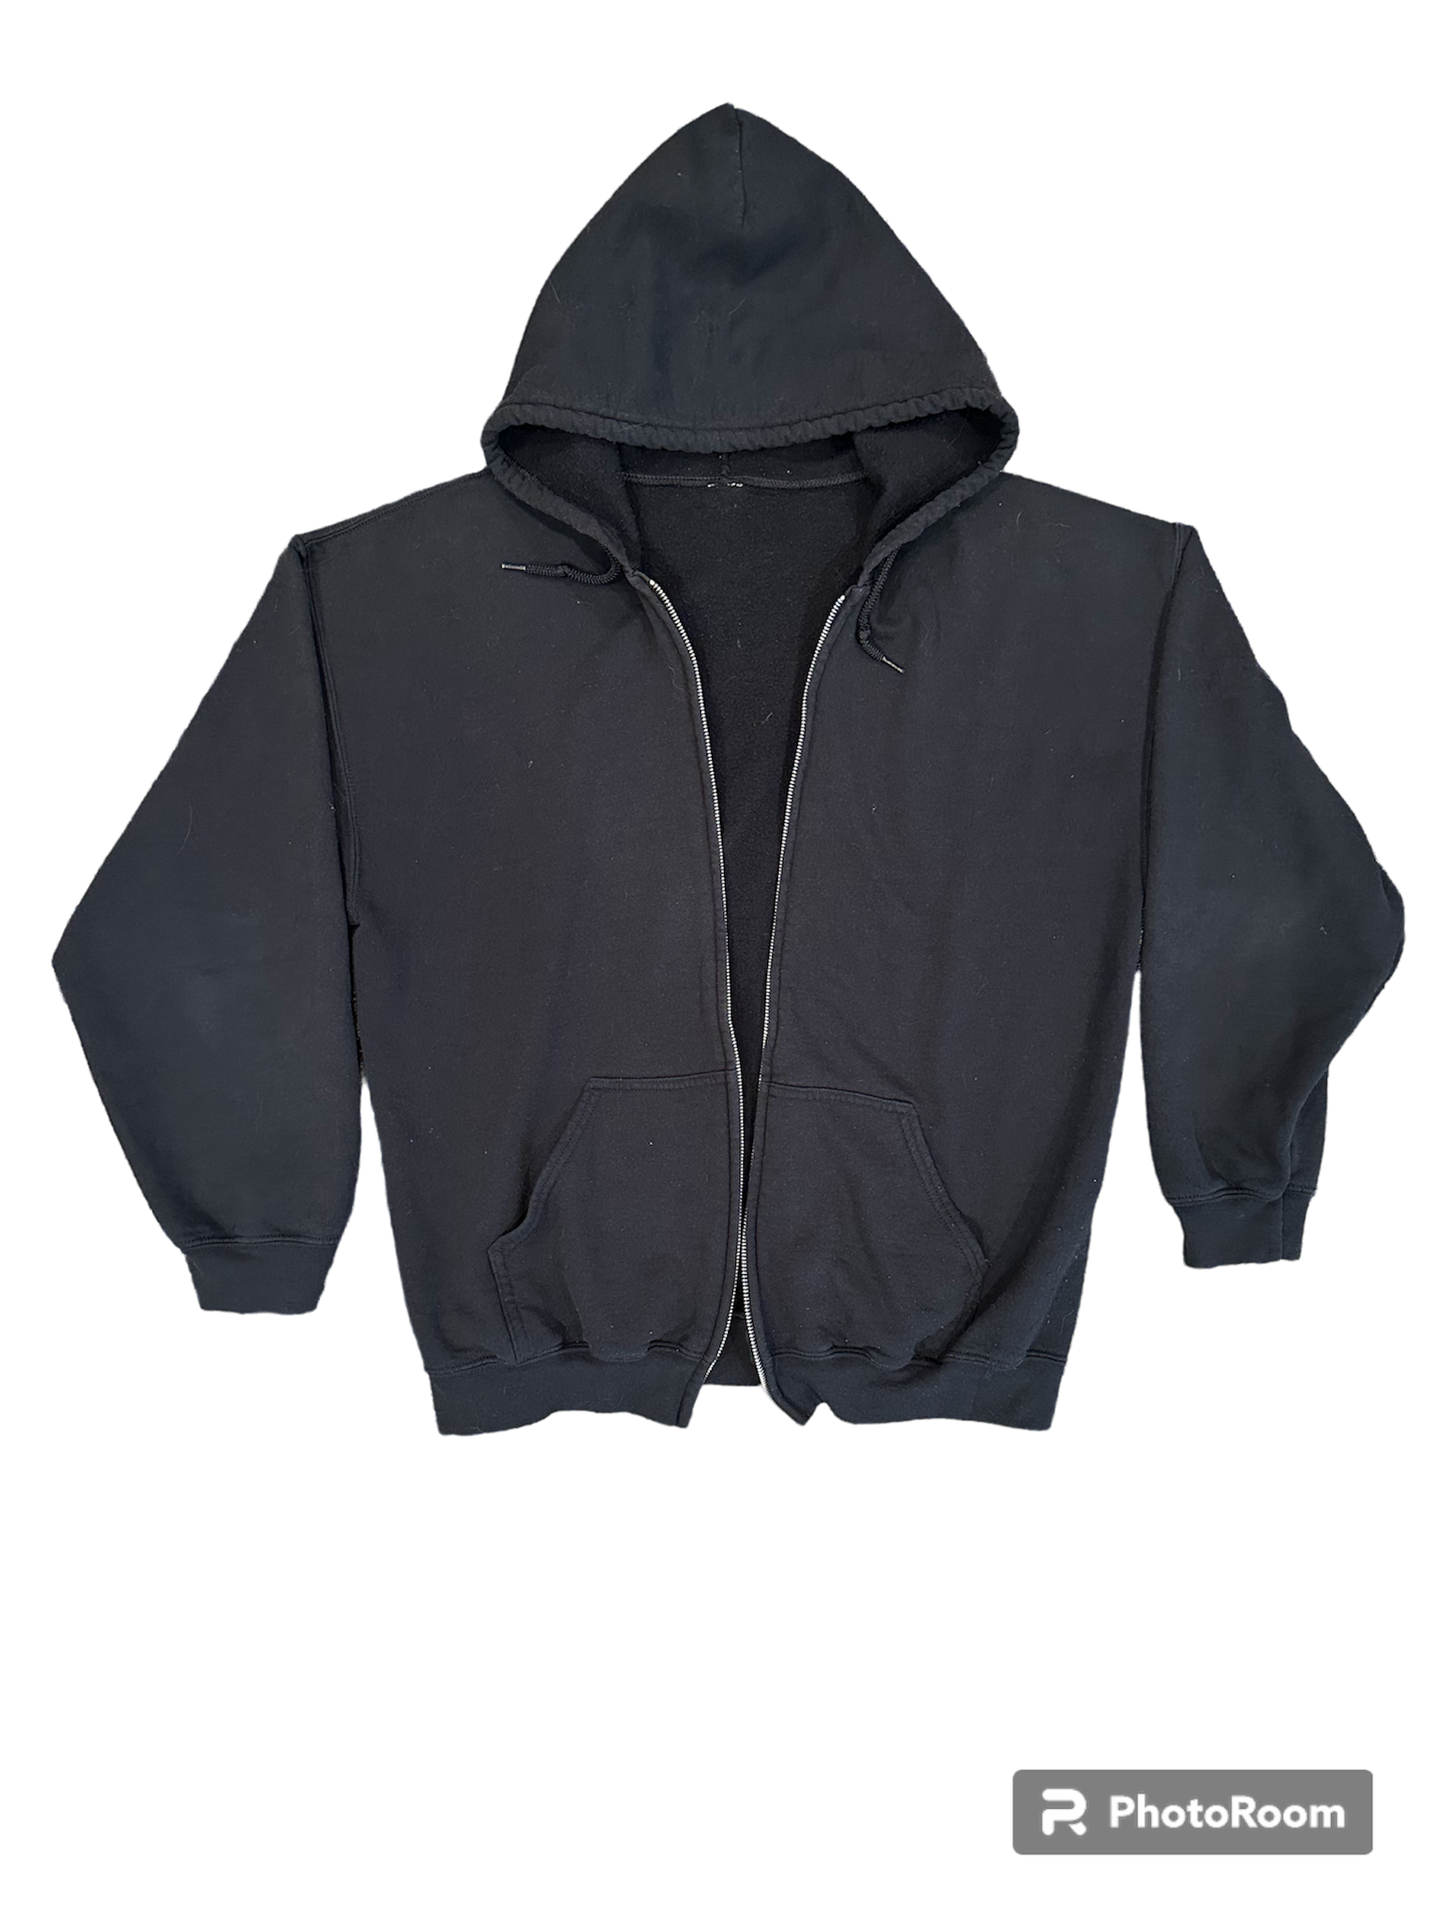 Blank black zip up hoodie